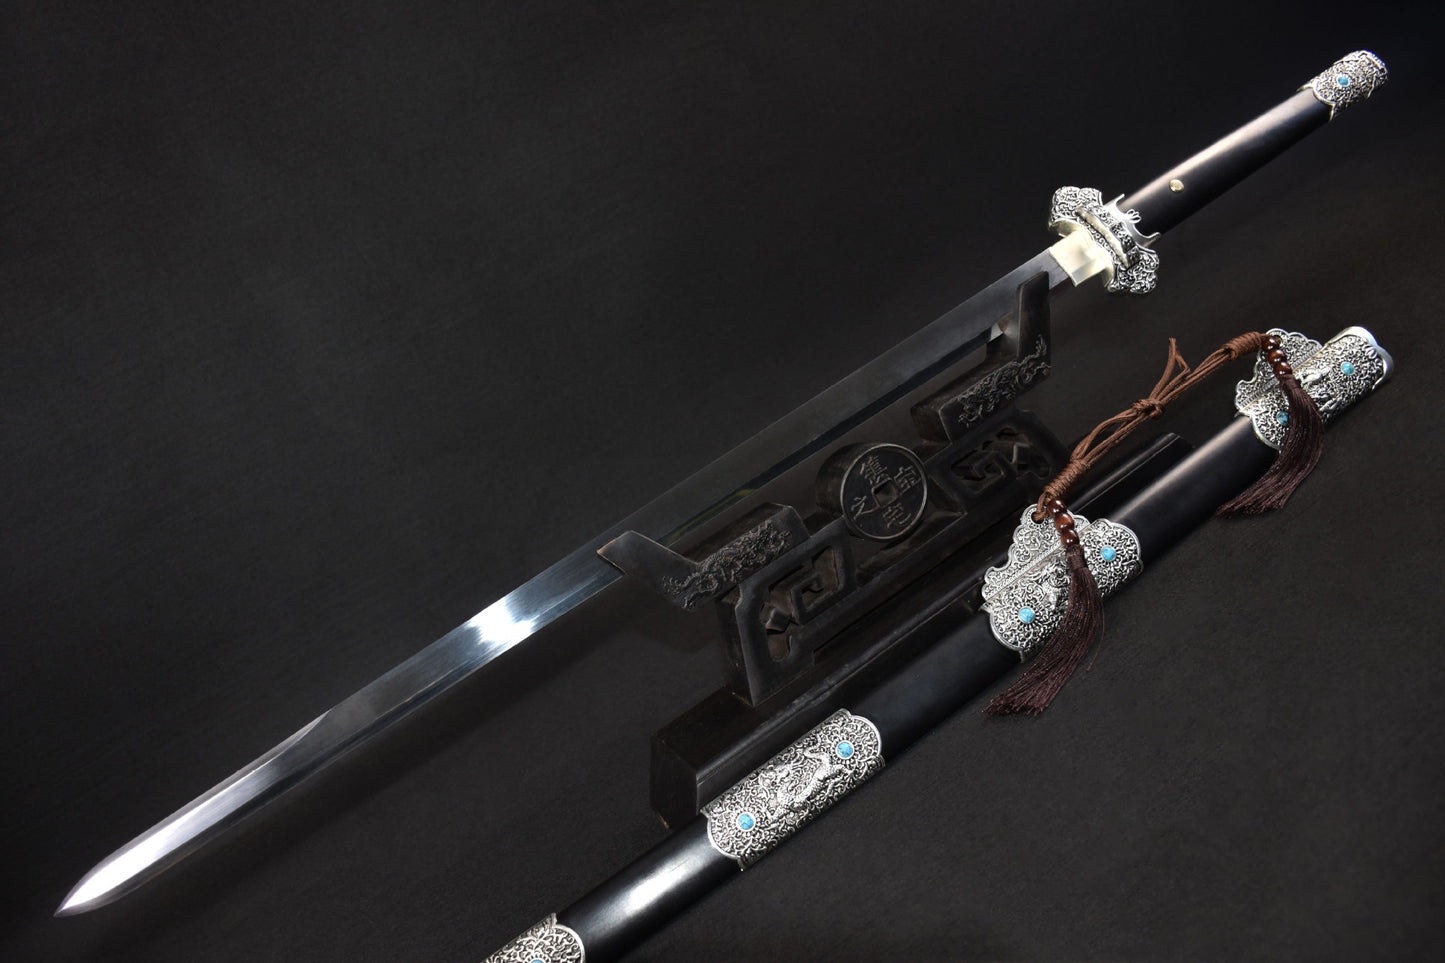 Manual Imitation silver Tang Dynasty Sword